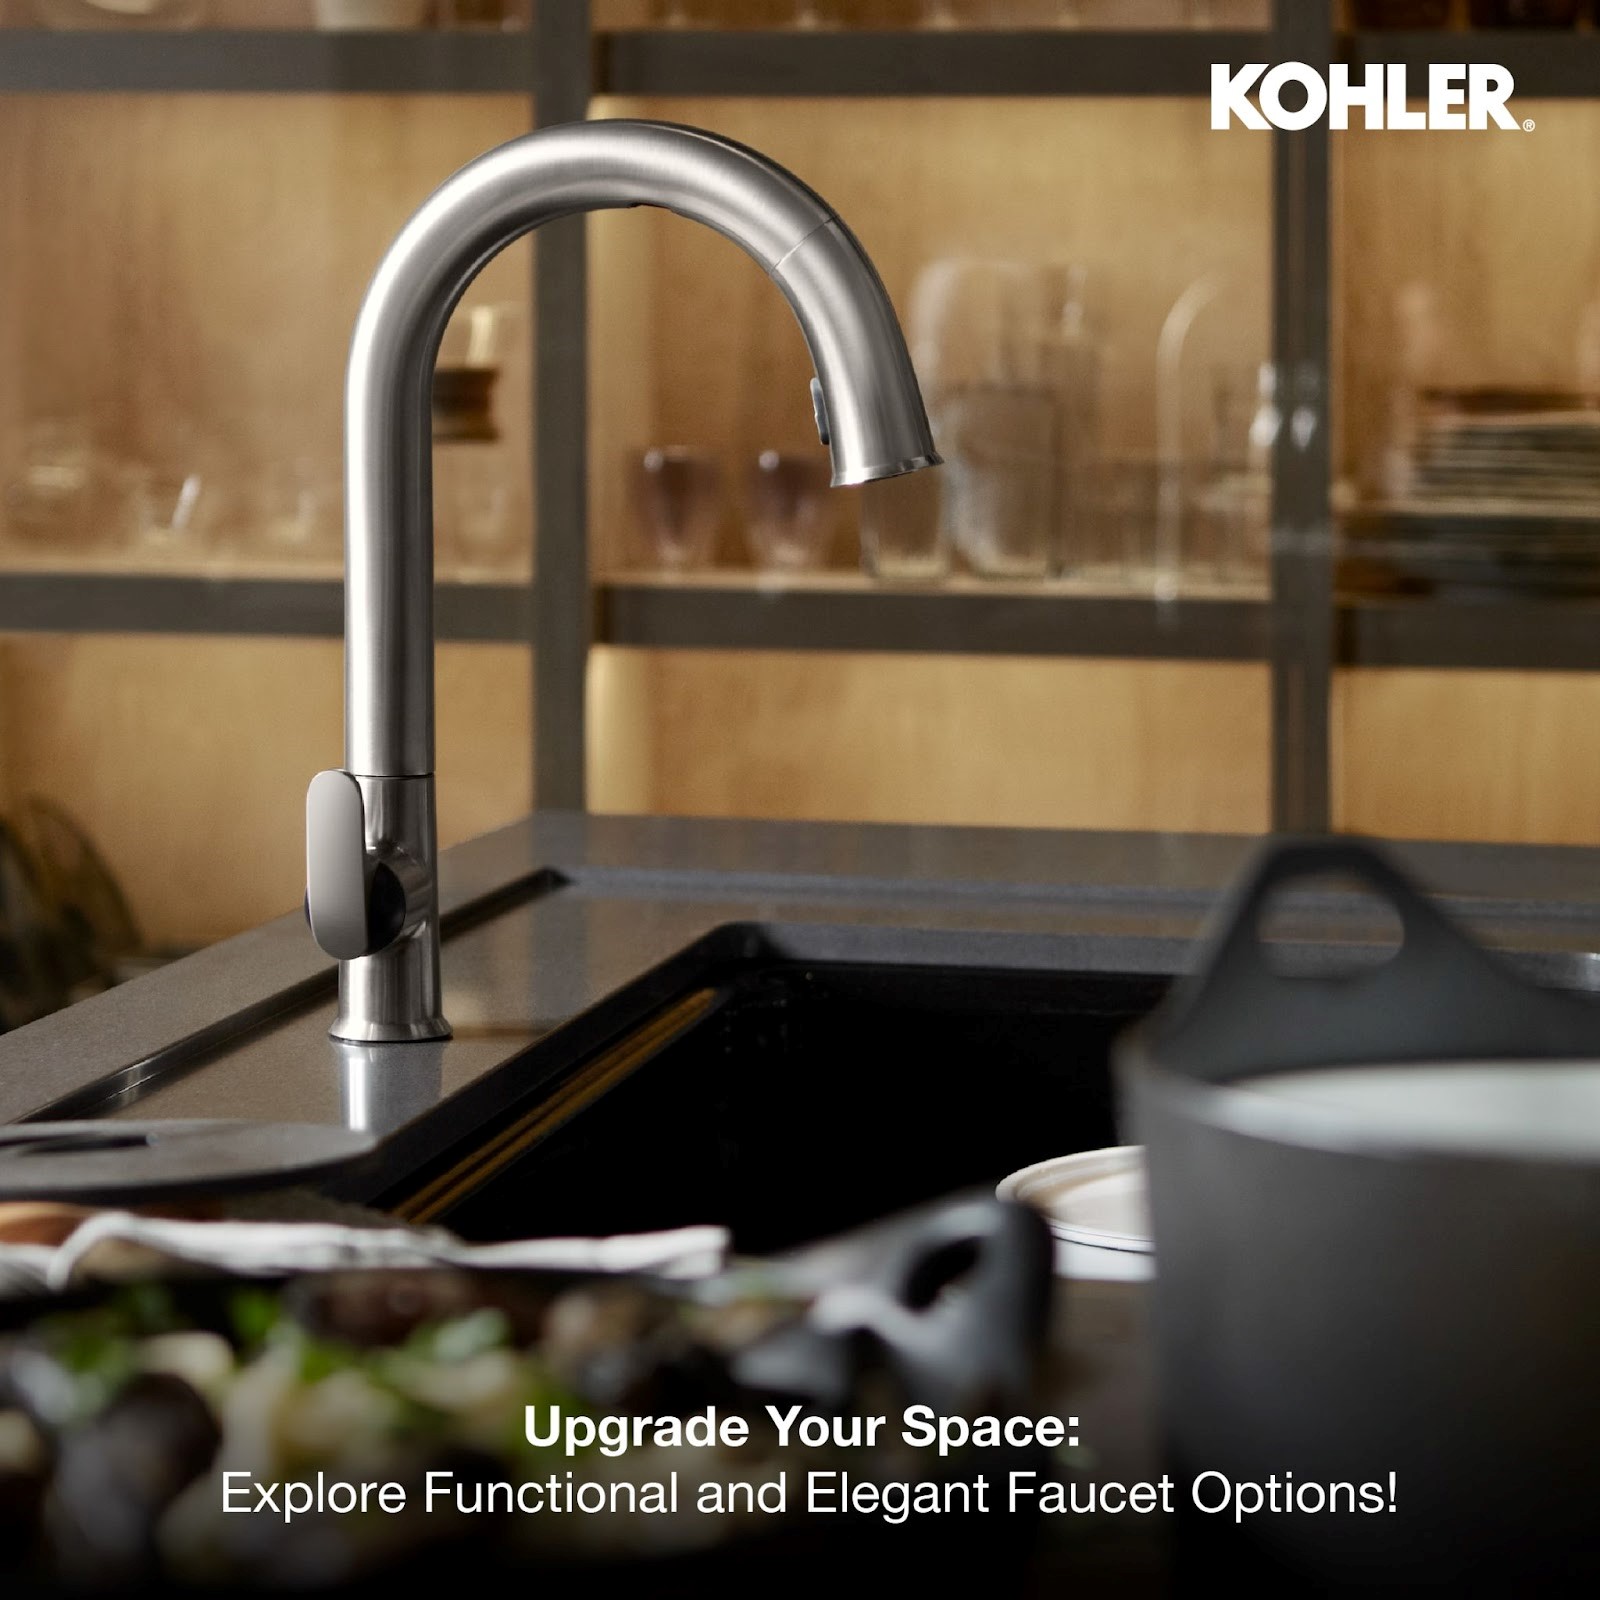 Kohler Functional and Elegant Kitchen Faucet